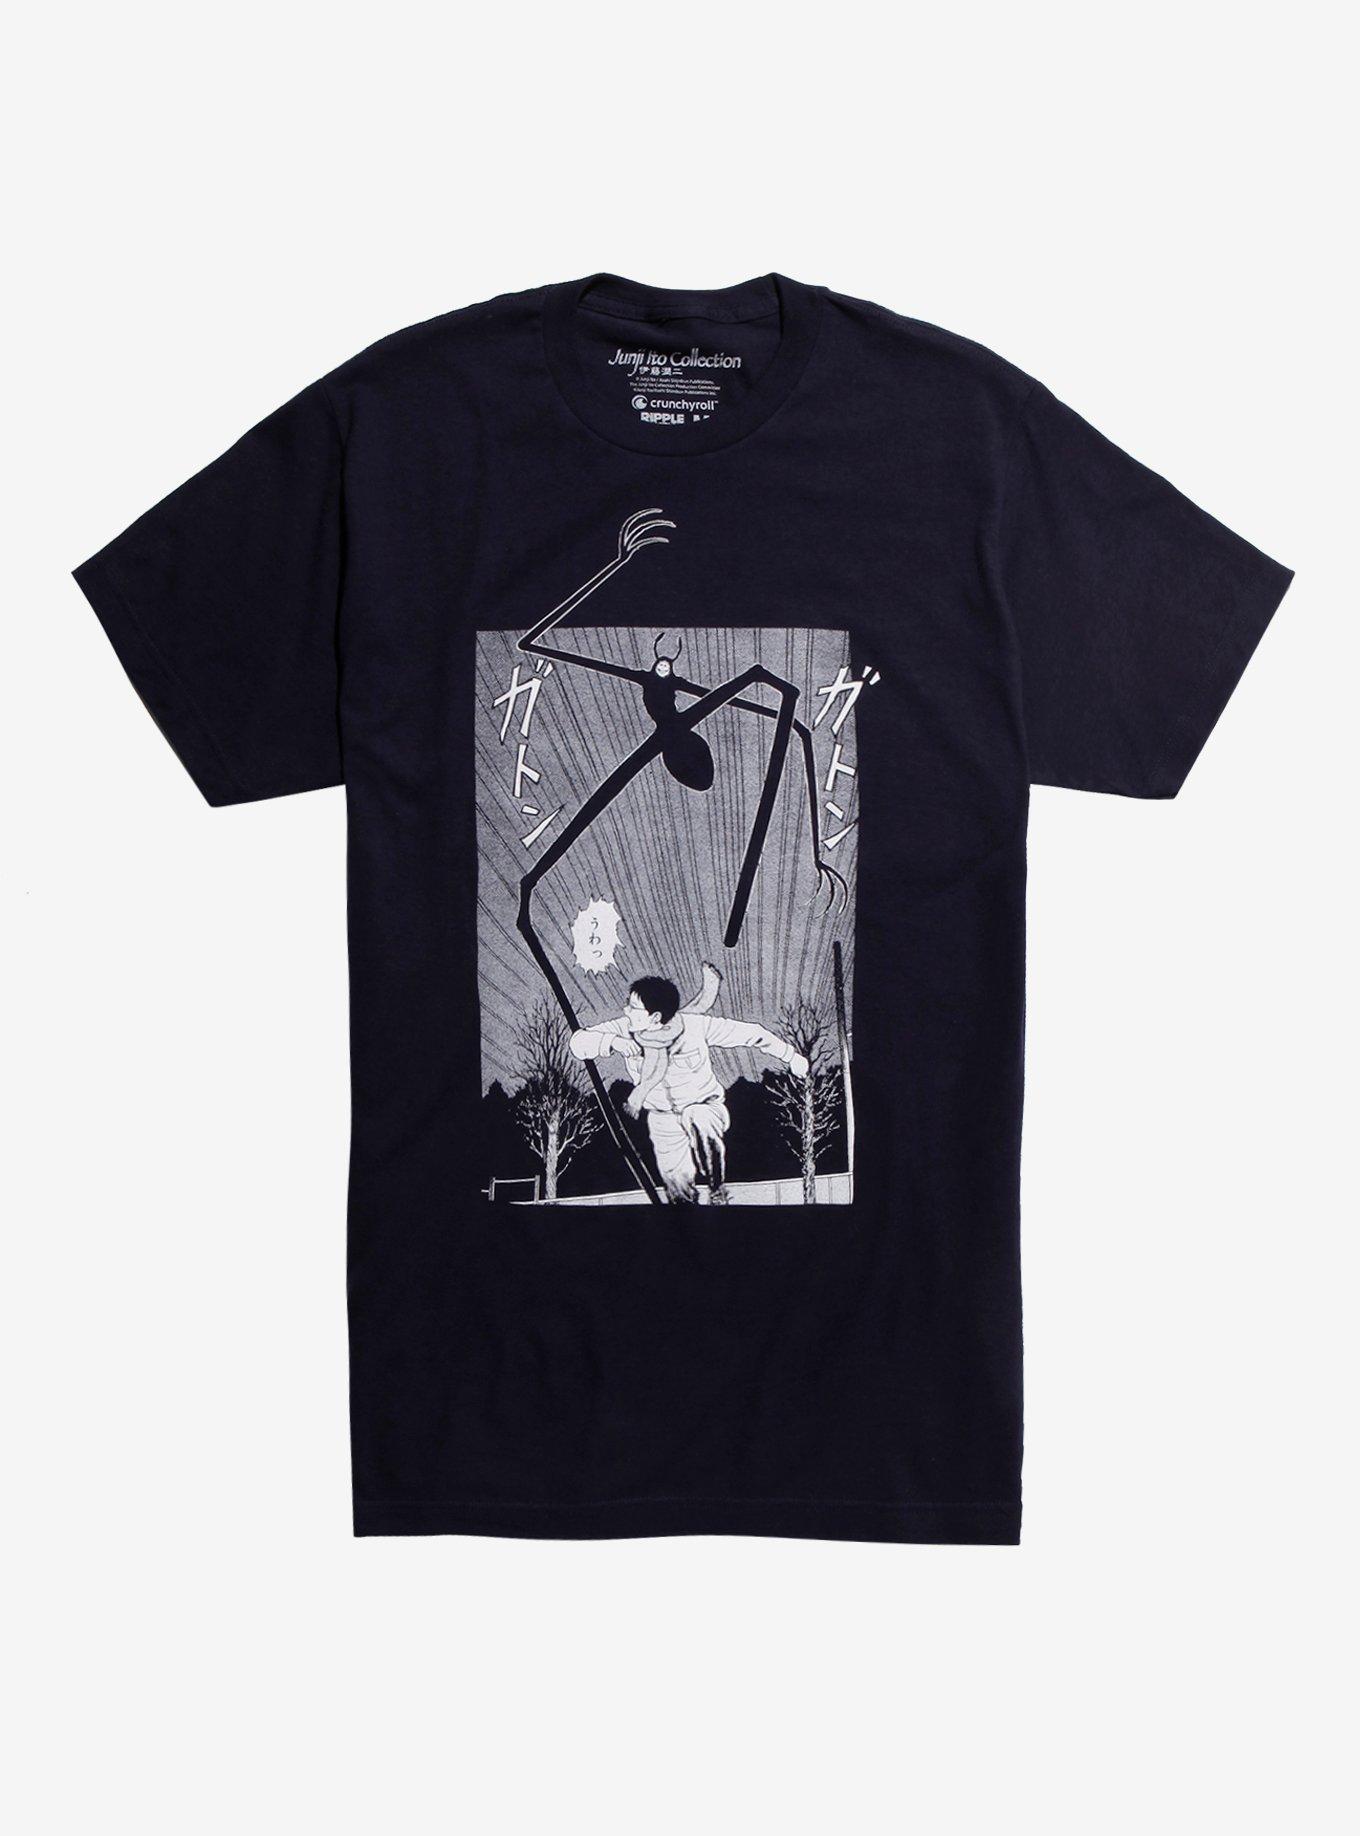 Junji Ito Collection Running T-Shirt | Hot Topic